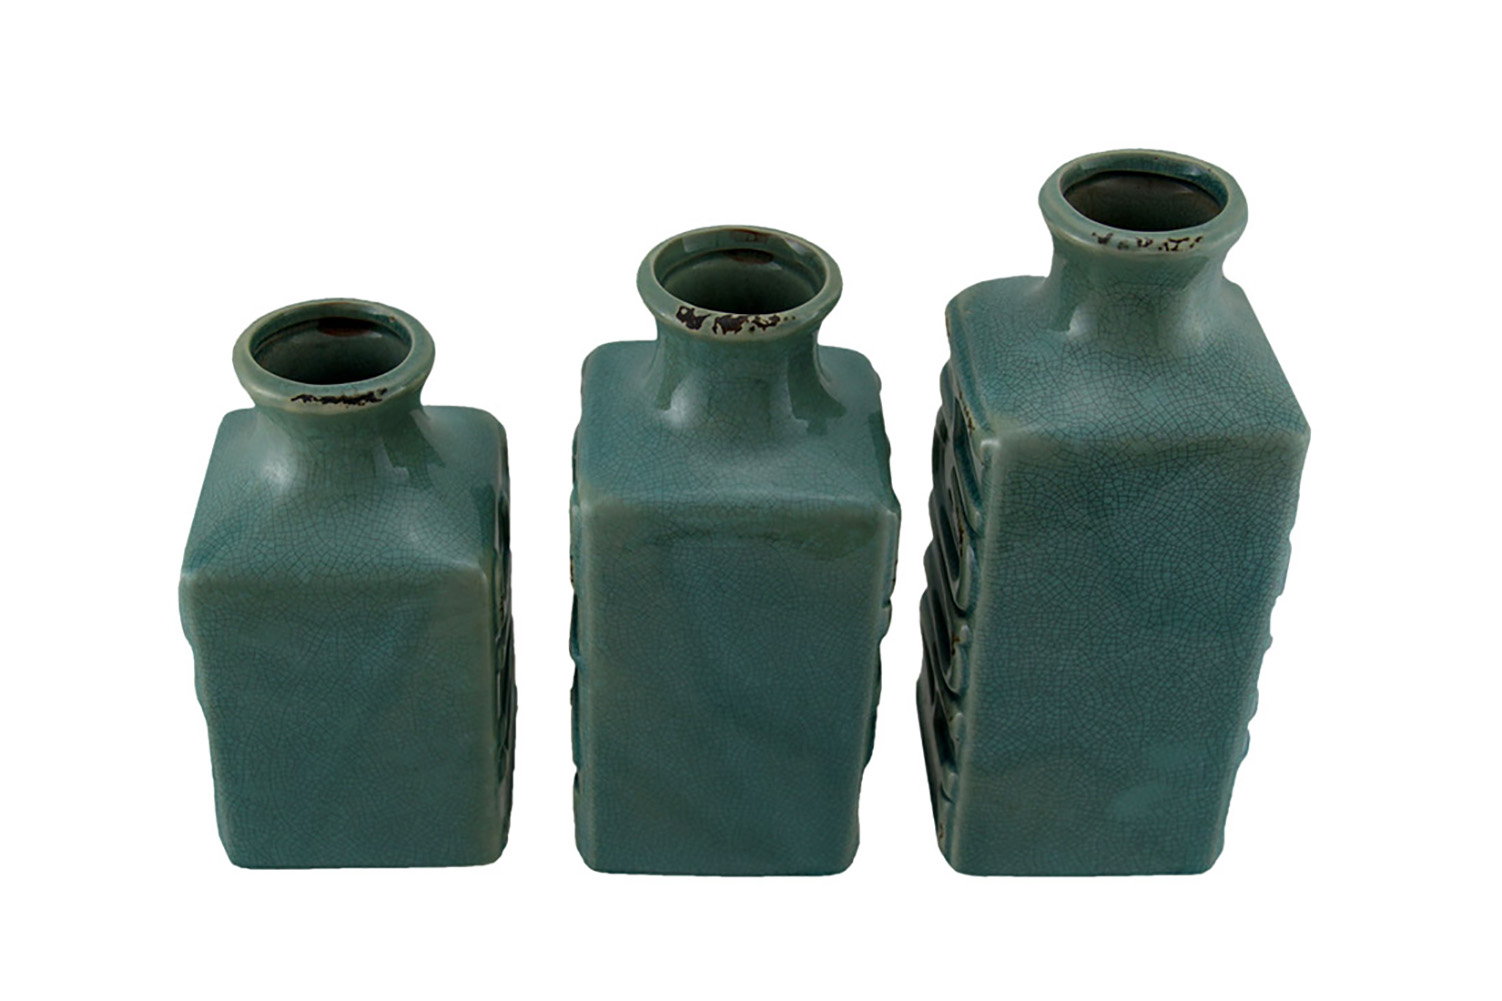 Zeckos Set of 3 Blue Crackle Finish Live Laugh and Love Porcelain Vases - image 3 of 3